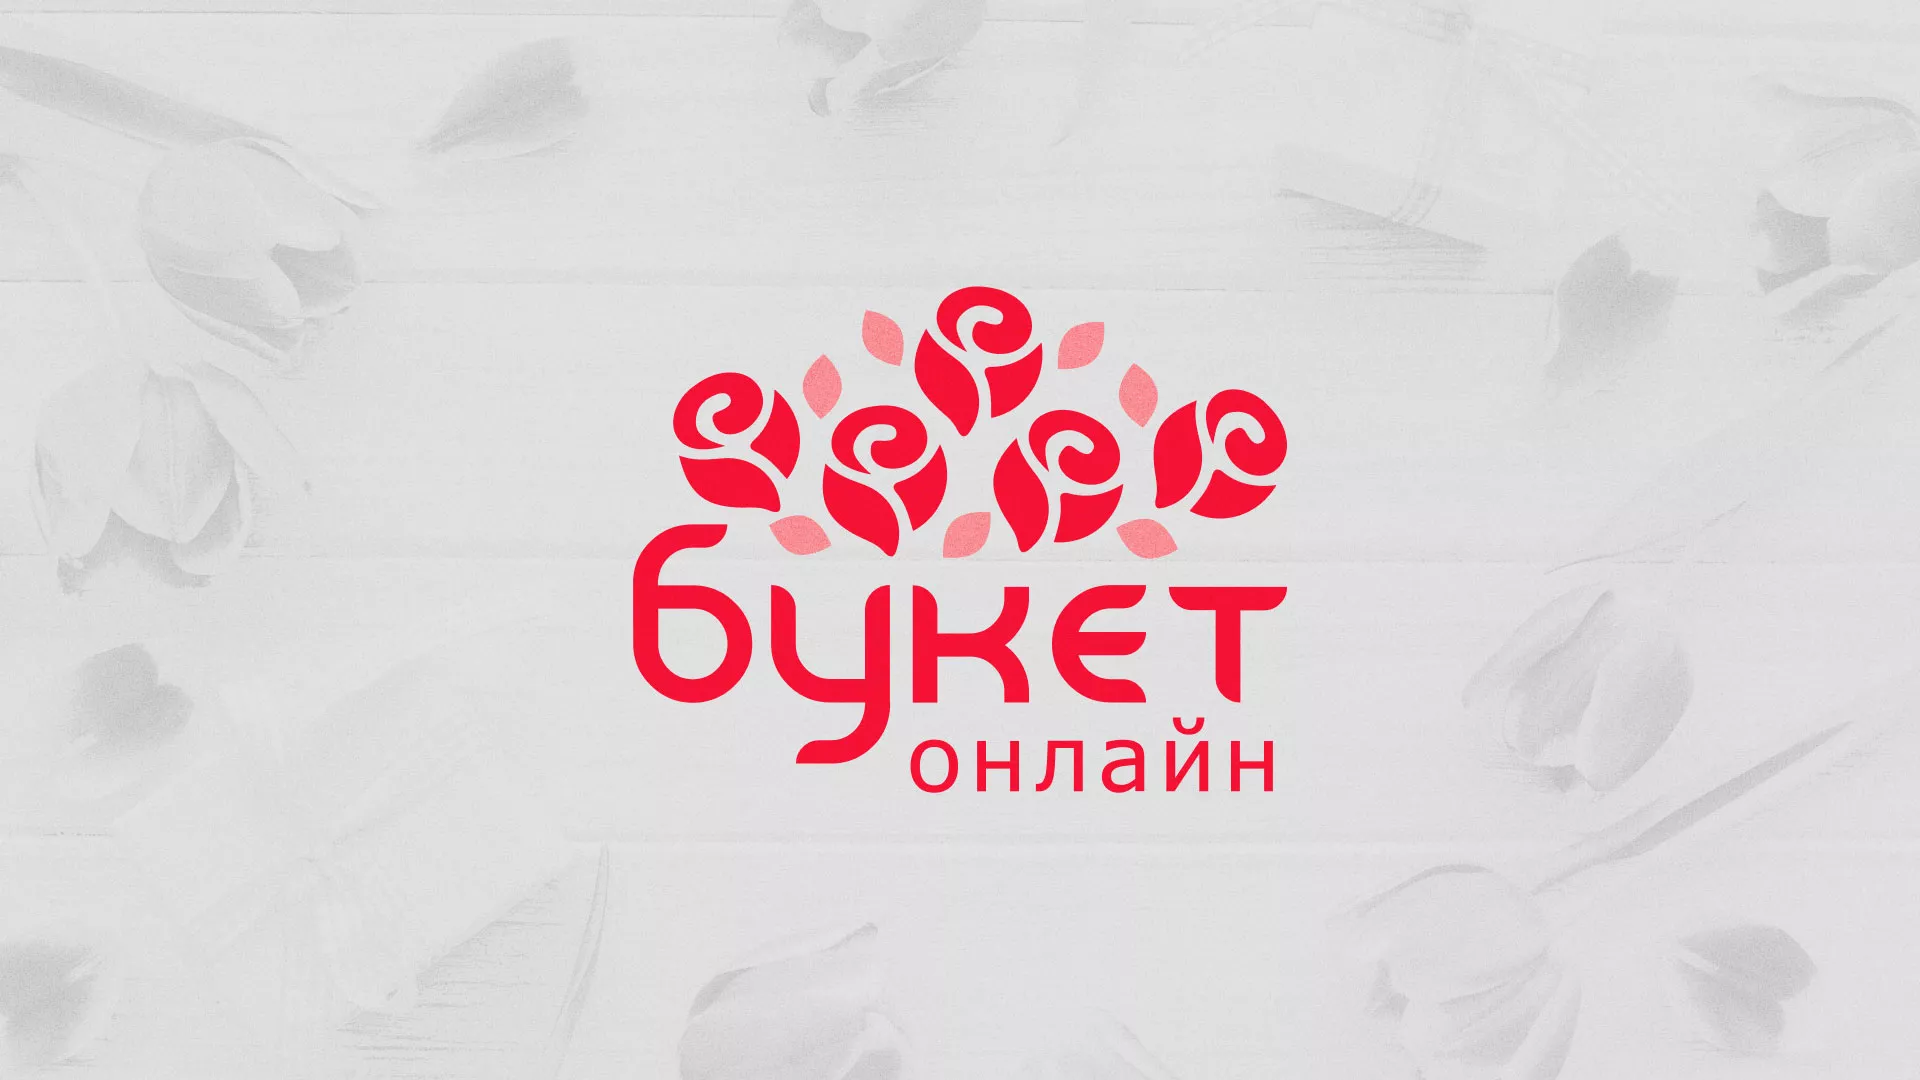 Создание интернет-магазина «Букет-онлайн» по цветам в Харовске